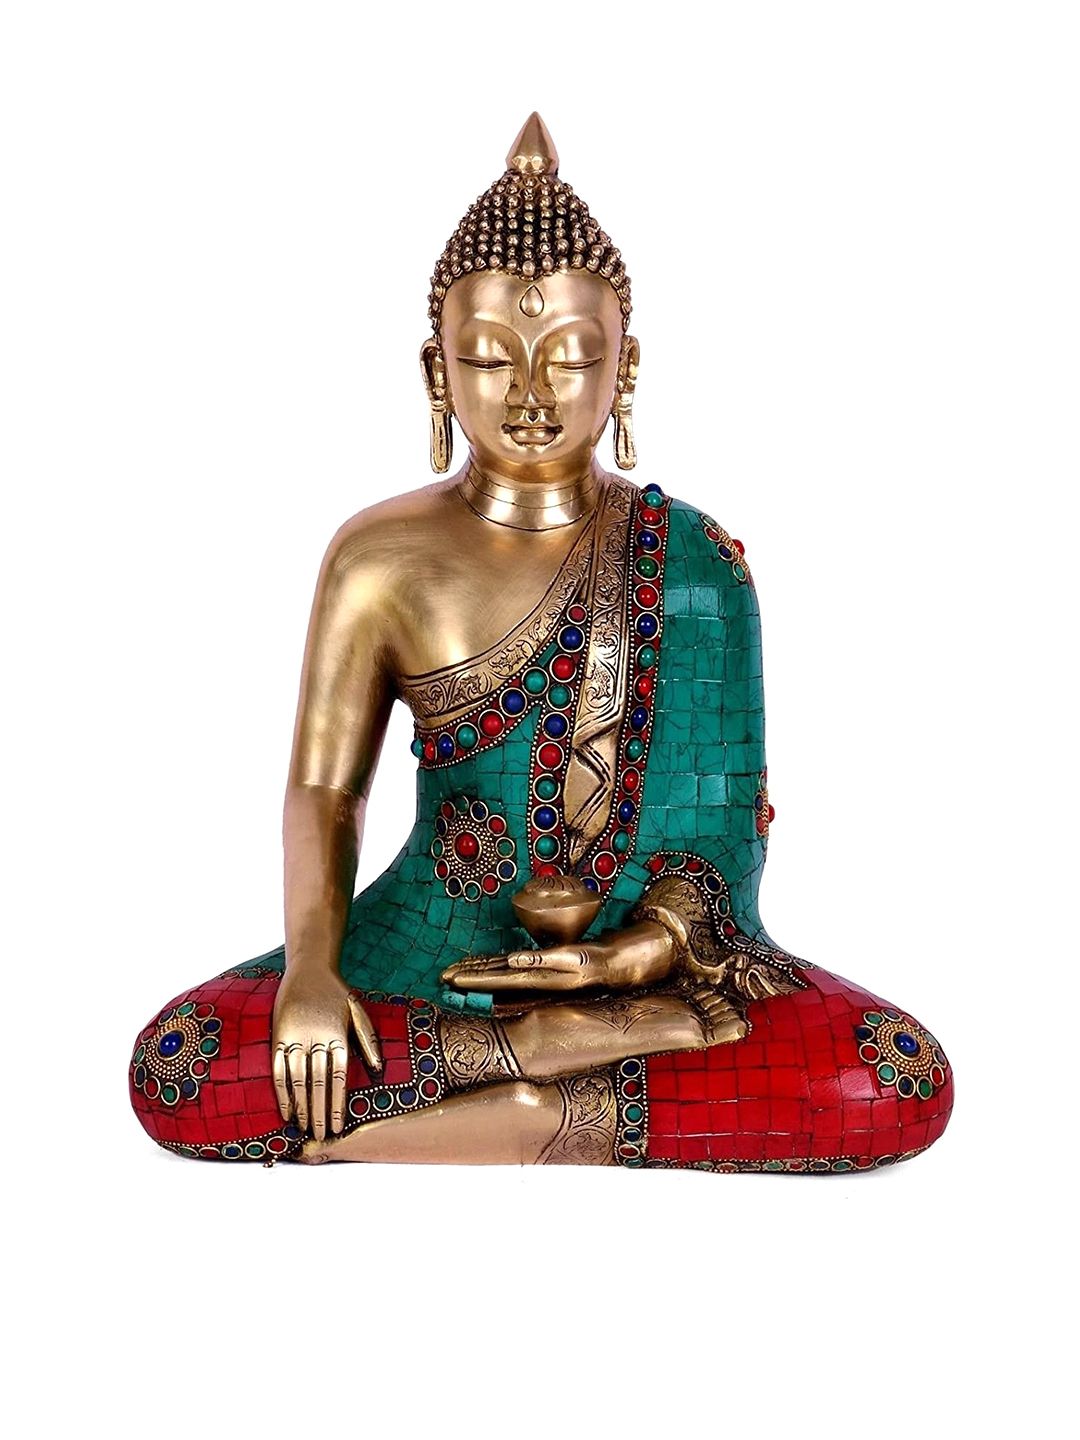 CraftVatika Gold-Toned & Green Handctrafted Bhumisparsha Mudra Buddha Statue Brass Showpiece Price in India